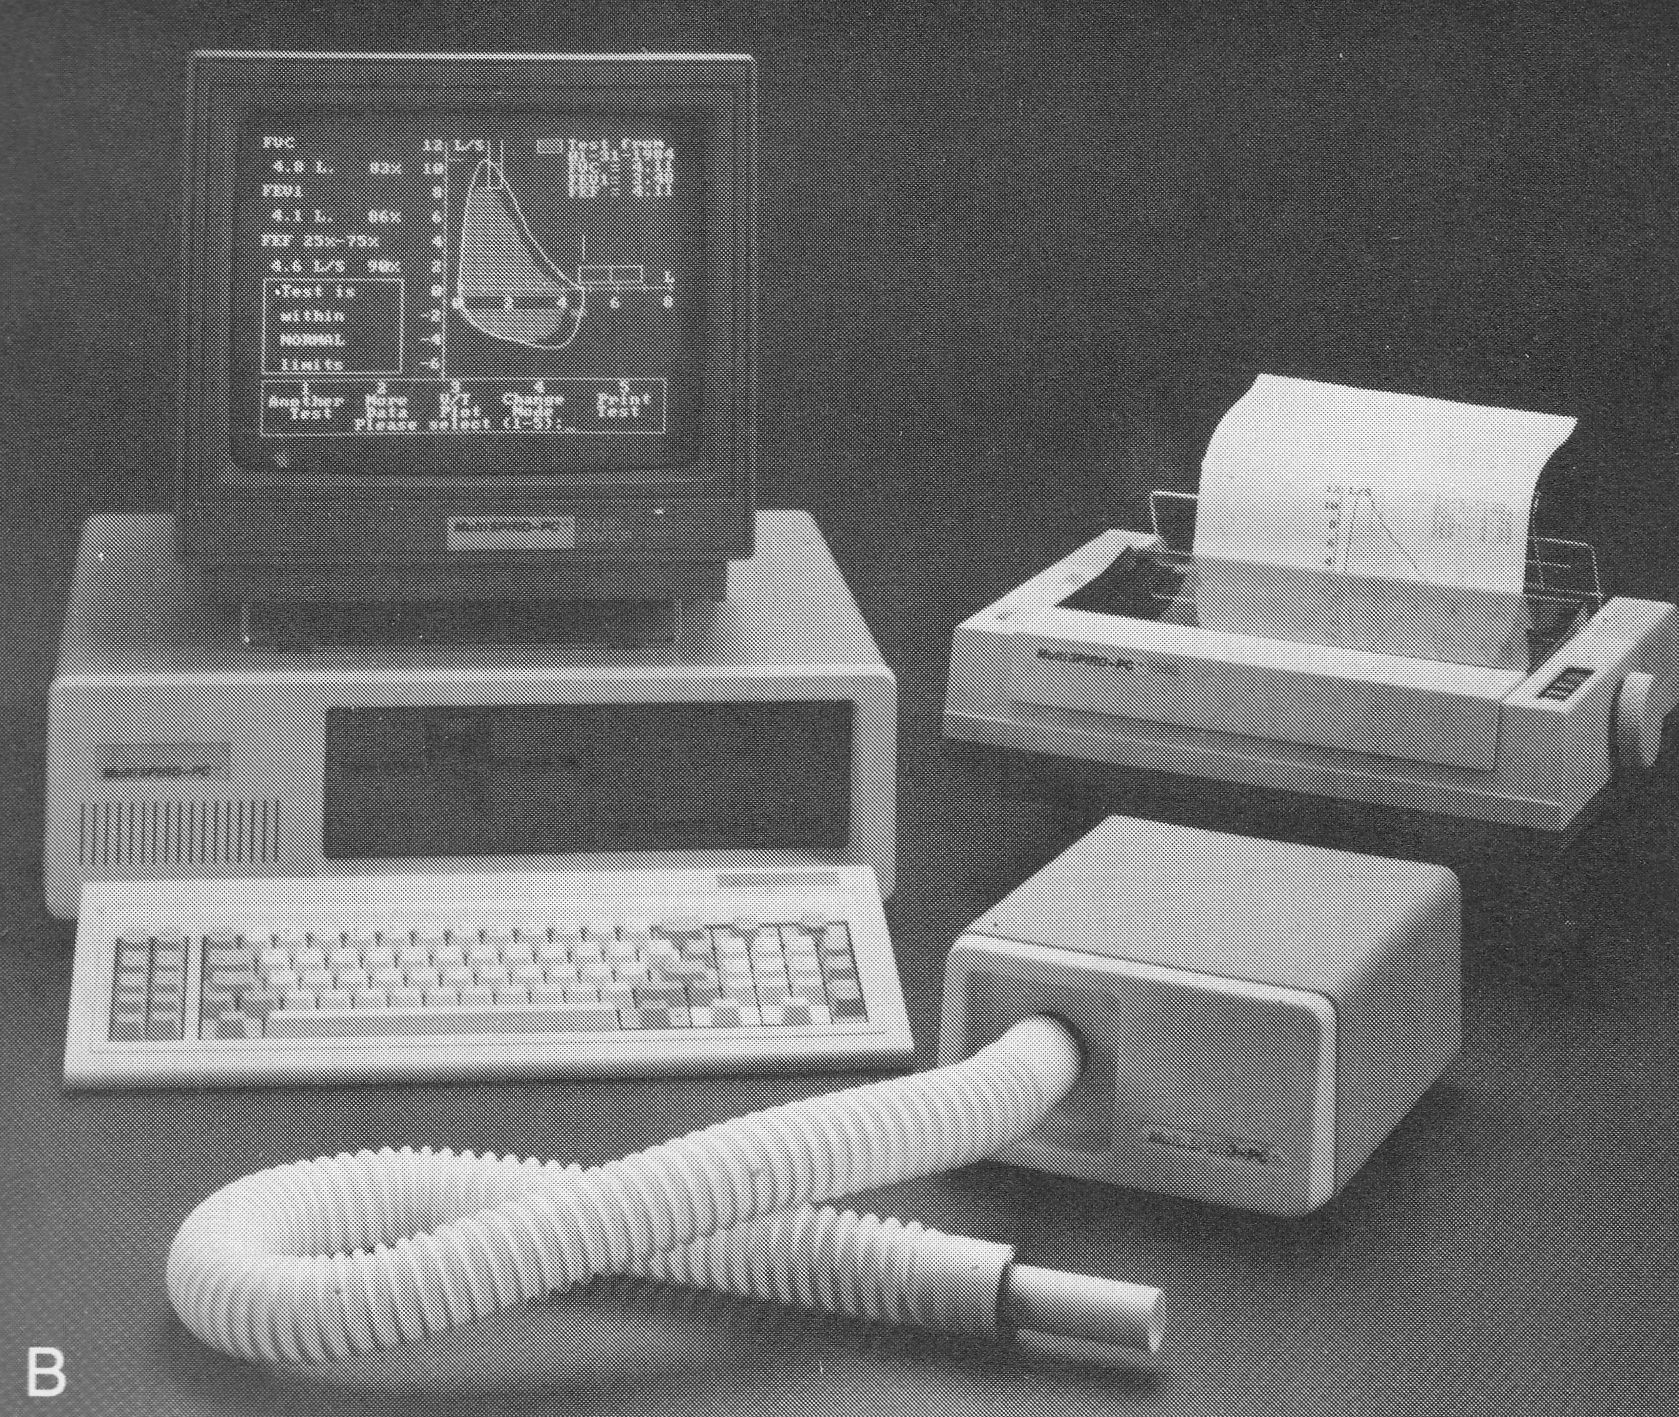 Spirometer_MultiSpiro_PC_1987